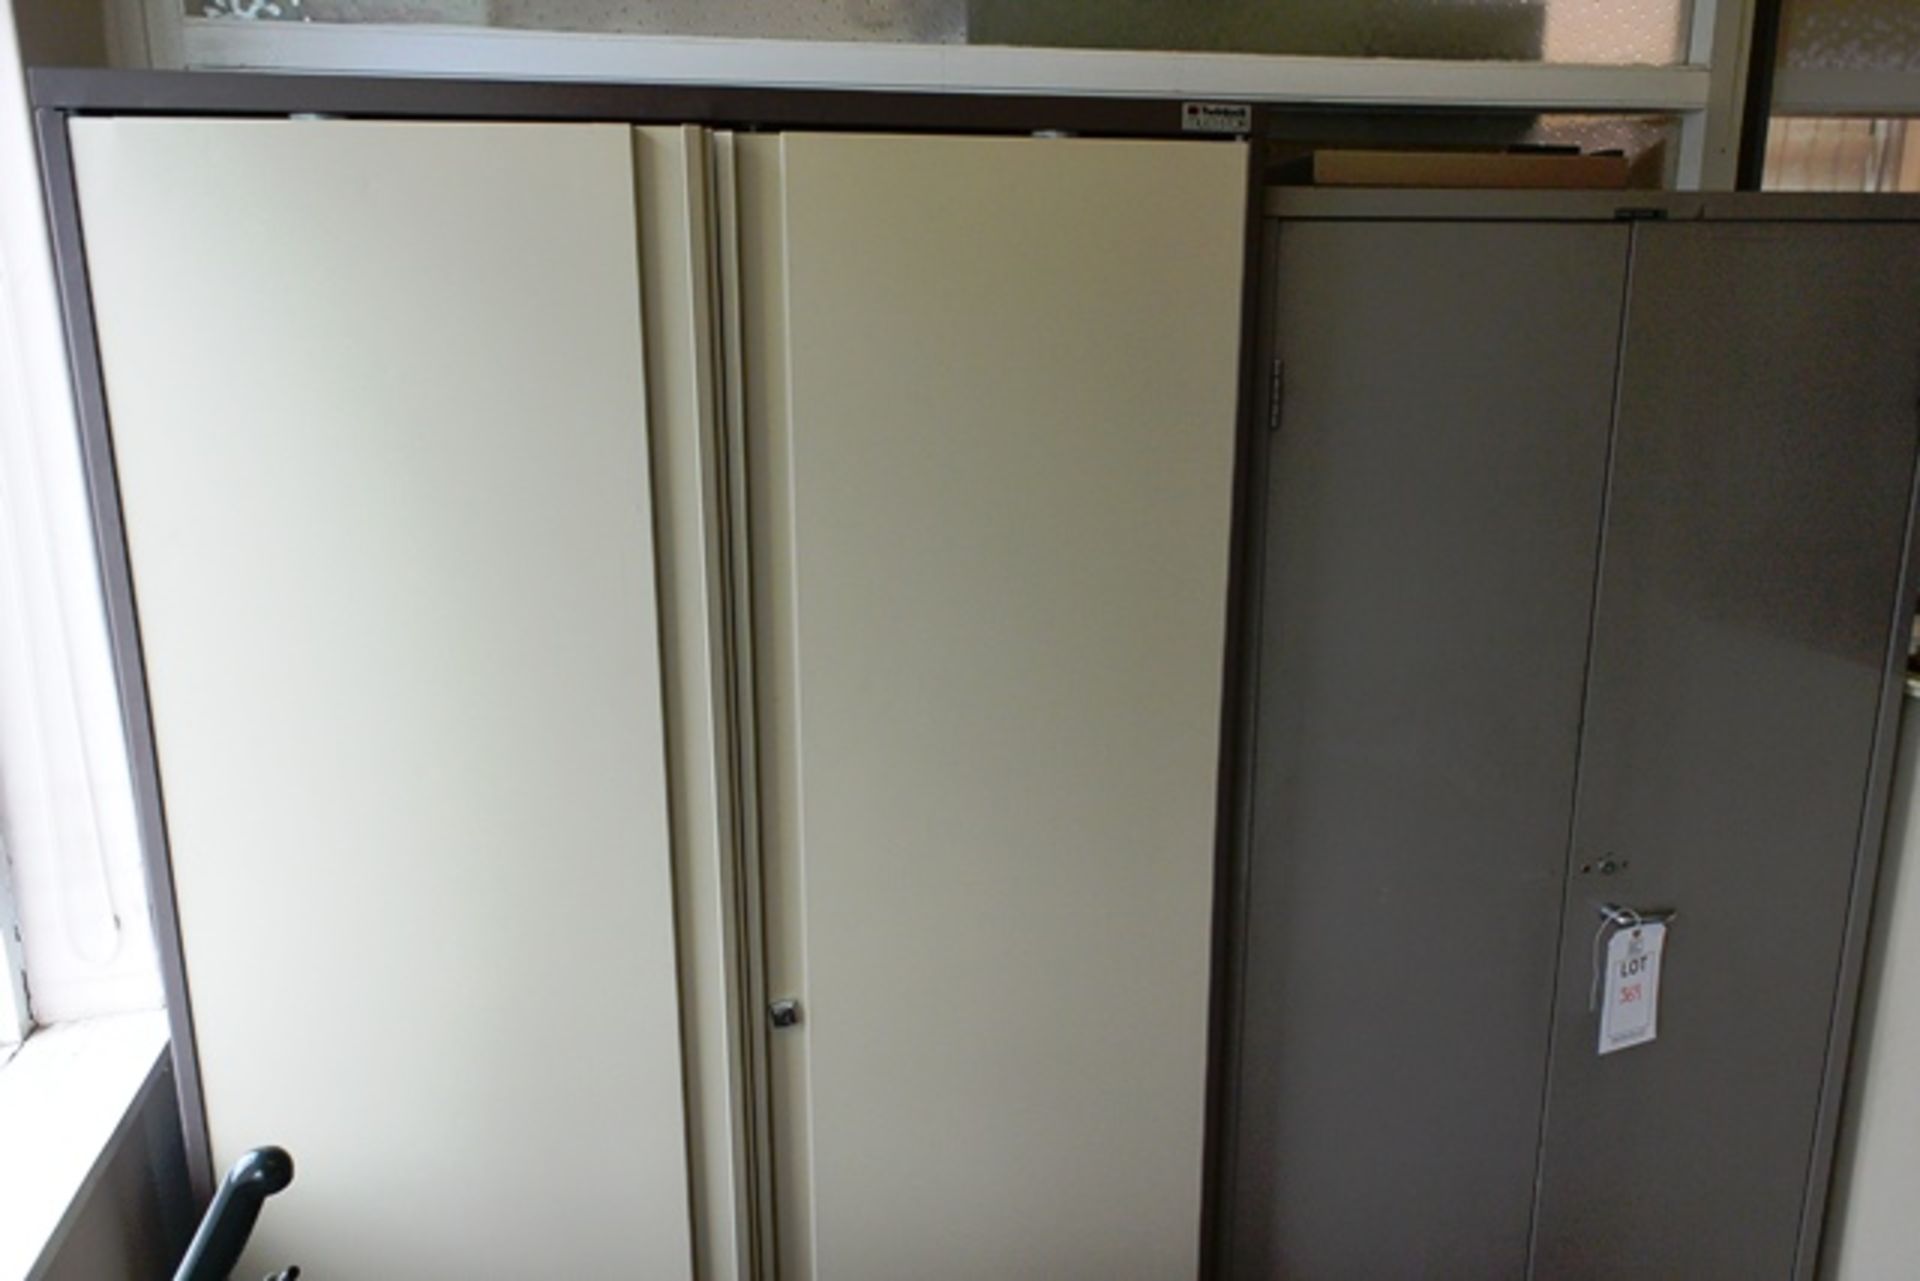 Two various 2 door steel storage cabinets